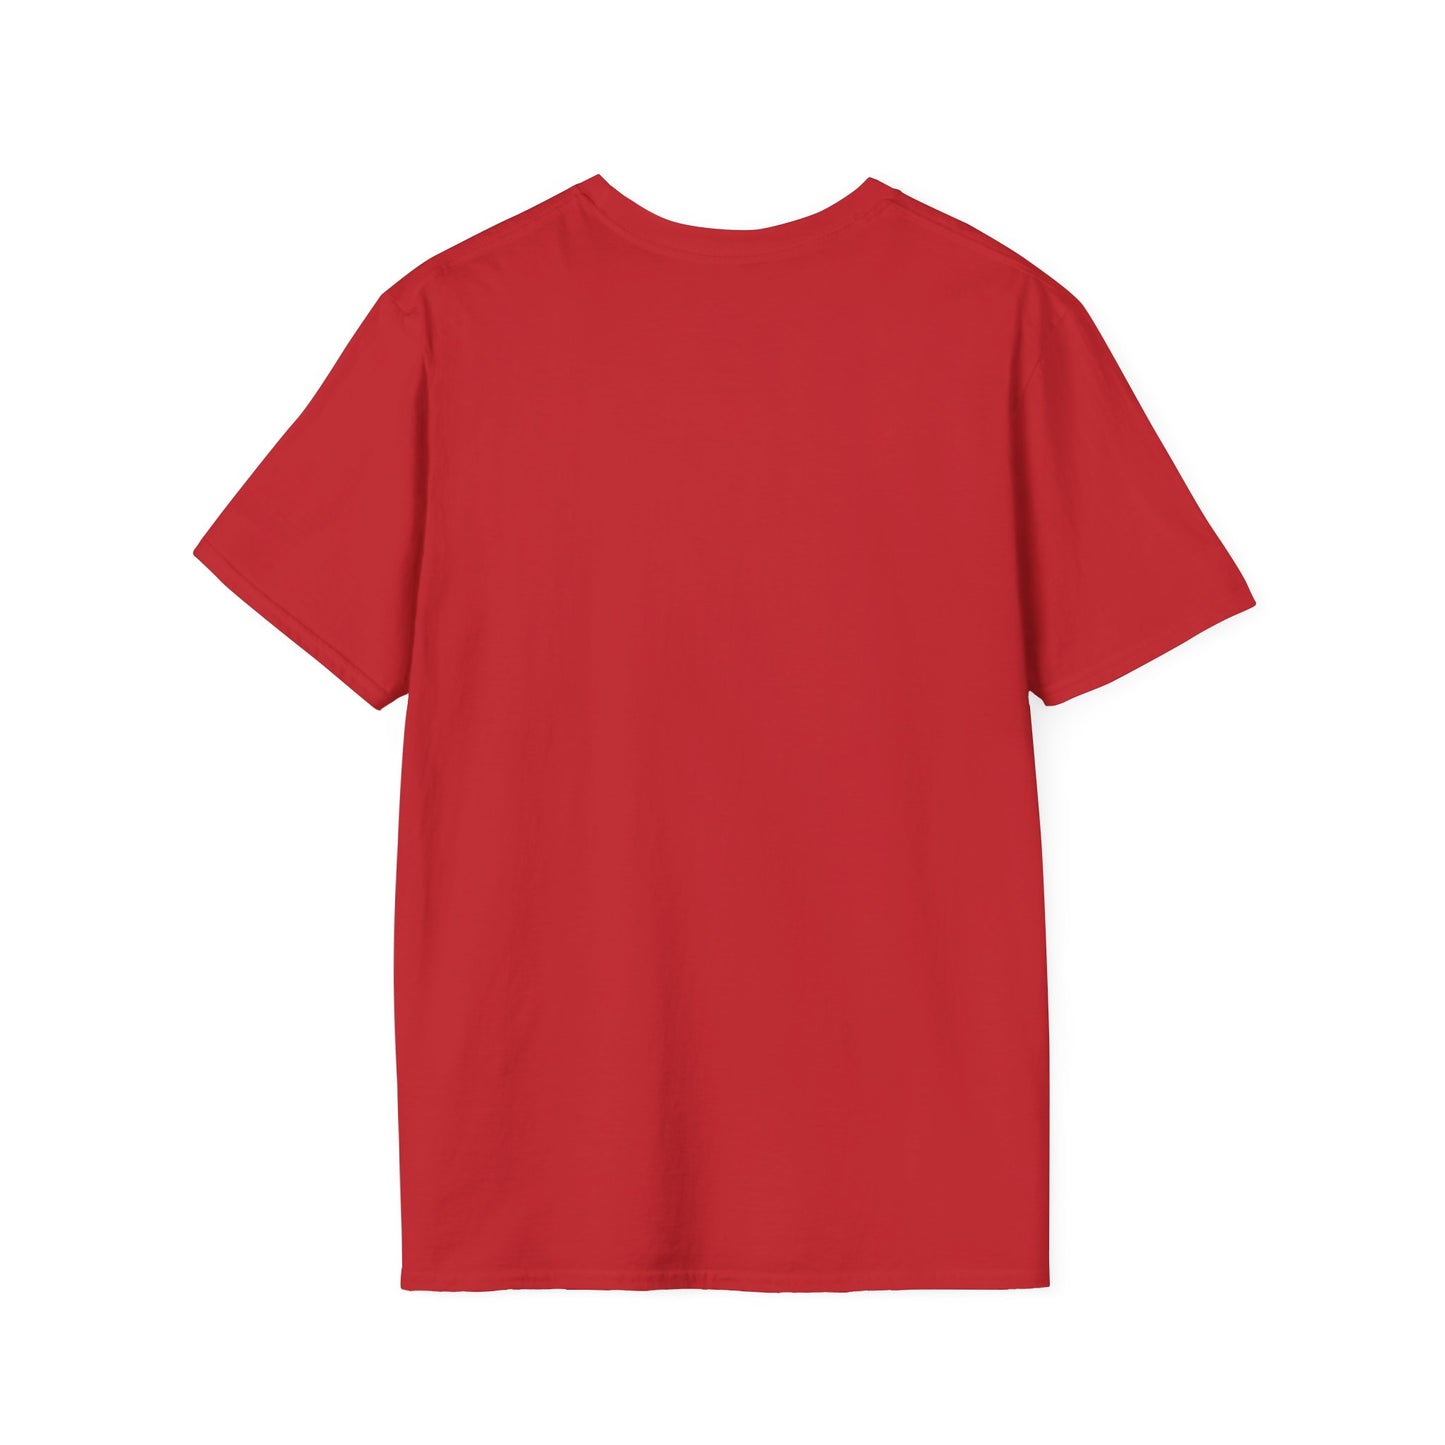 T-Shirt rouge unisexe flamboyant en soutien aux agriculteurs